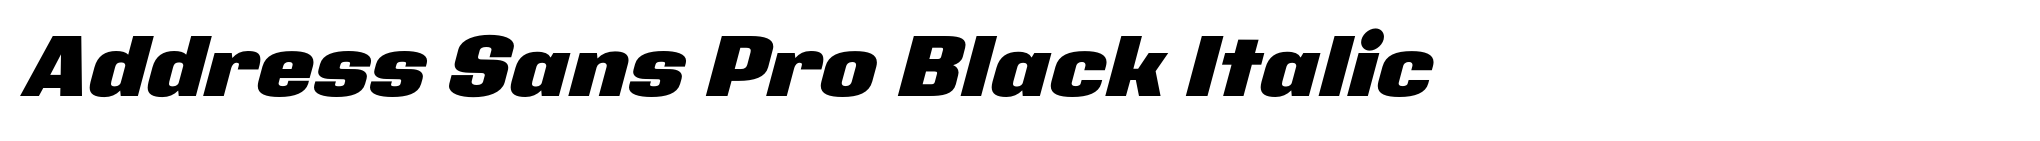 Address Sans Pro Black Italic image